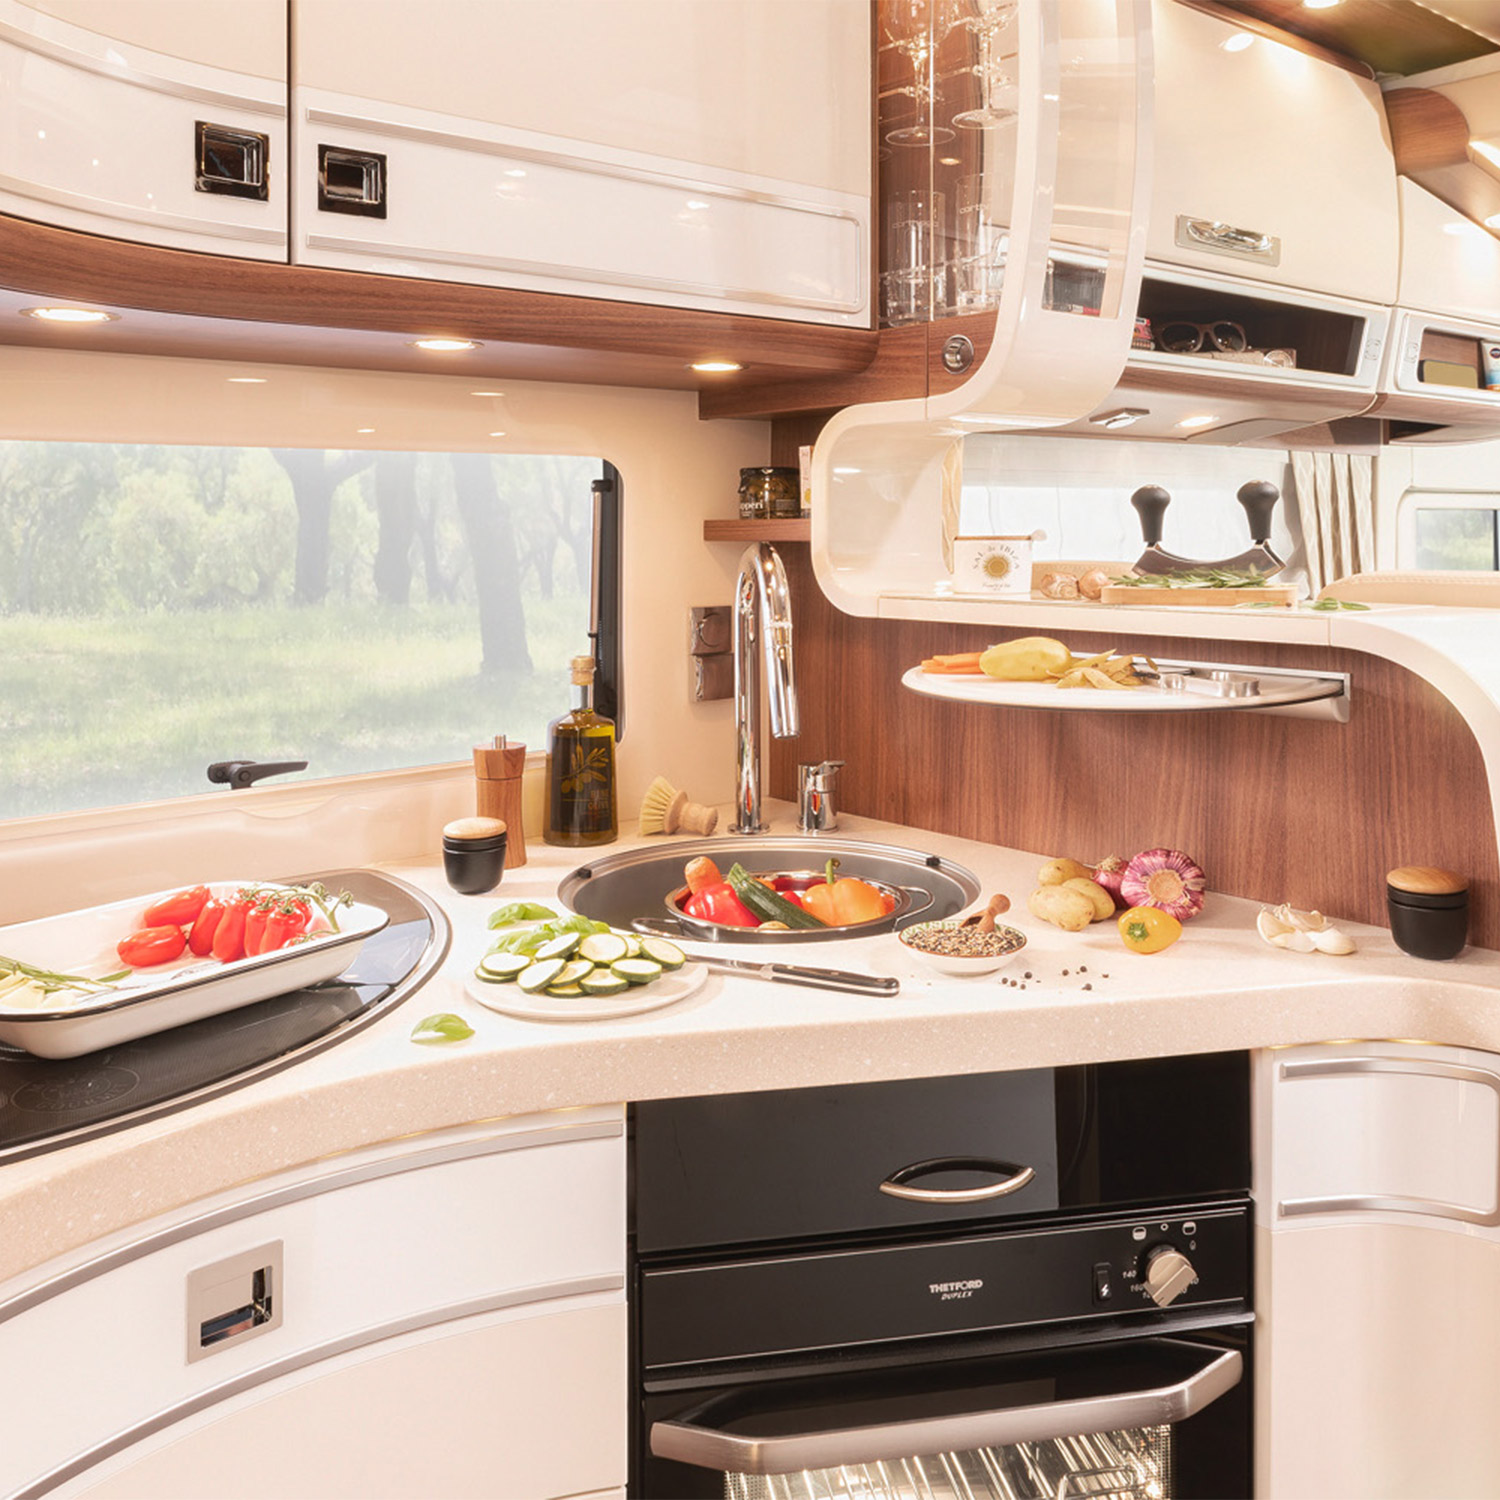 Übersicht der Küche eines Reisemobils mit hellen Fronten und integriertem Backofen